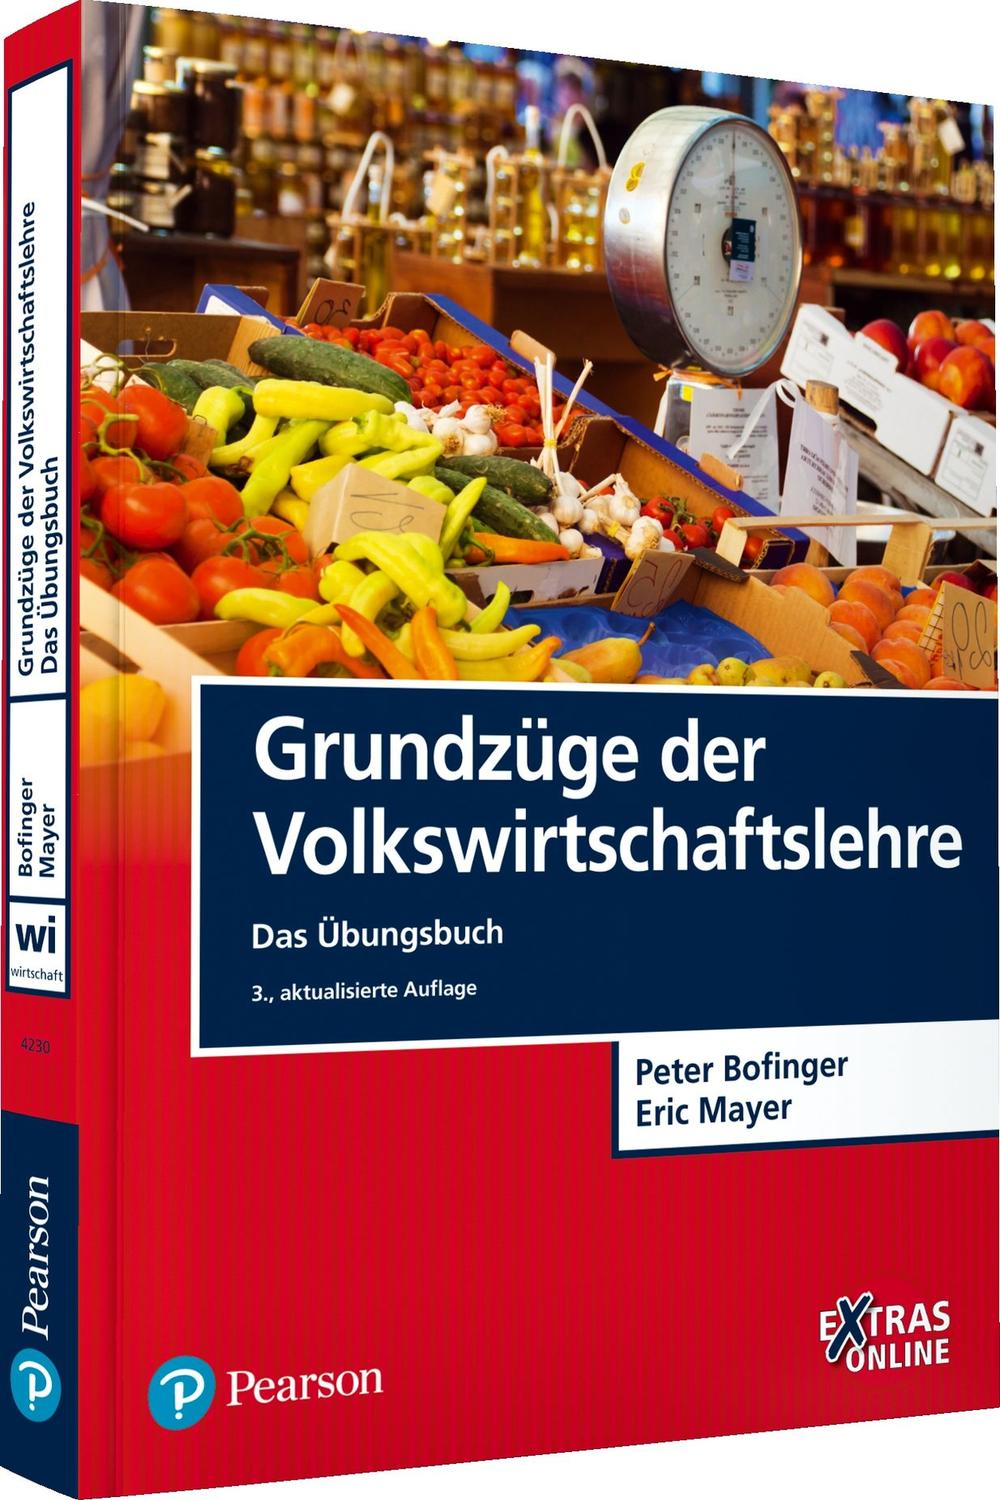 Grundzüge der Volkswirtschaftslehre - Das Übungsbuch - Peter Bofinger, Eric Mayer